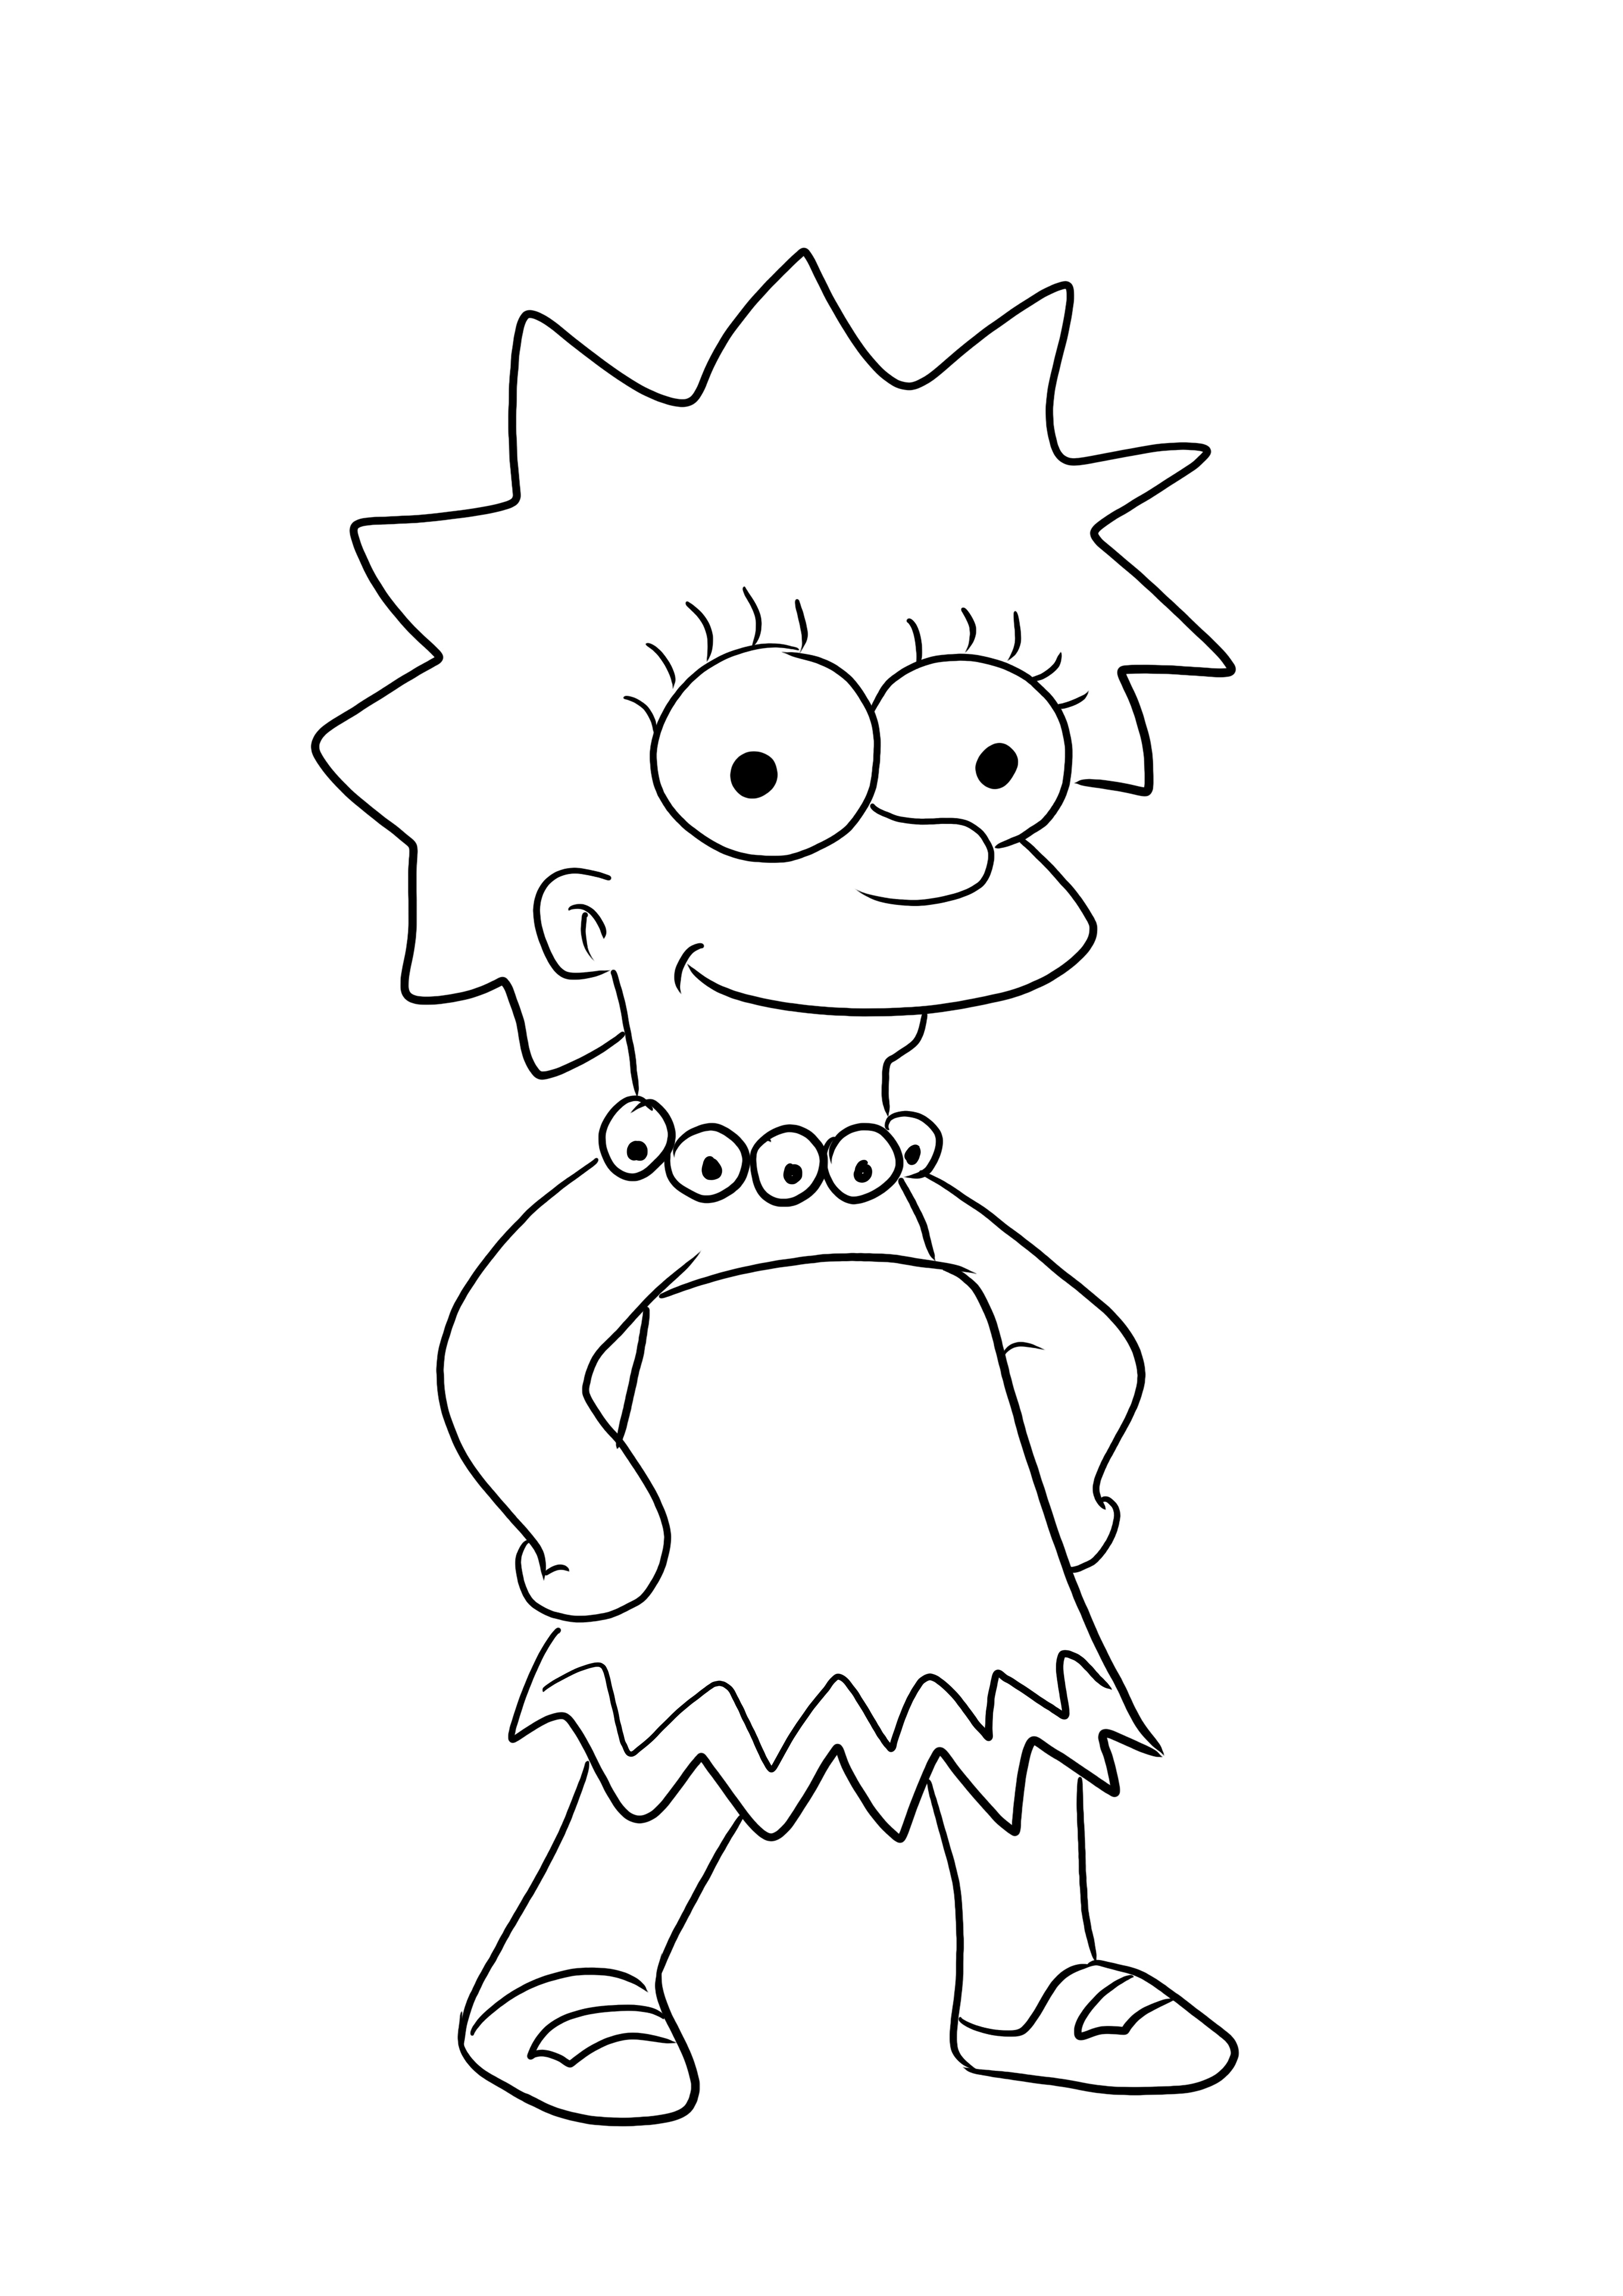 Gambar mewarnai Lisa Simpson yang lucu gratis untuk diunduh atau disimpan untuk nanti